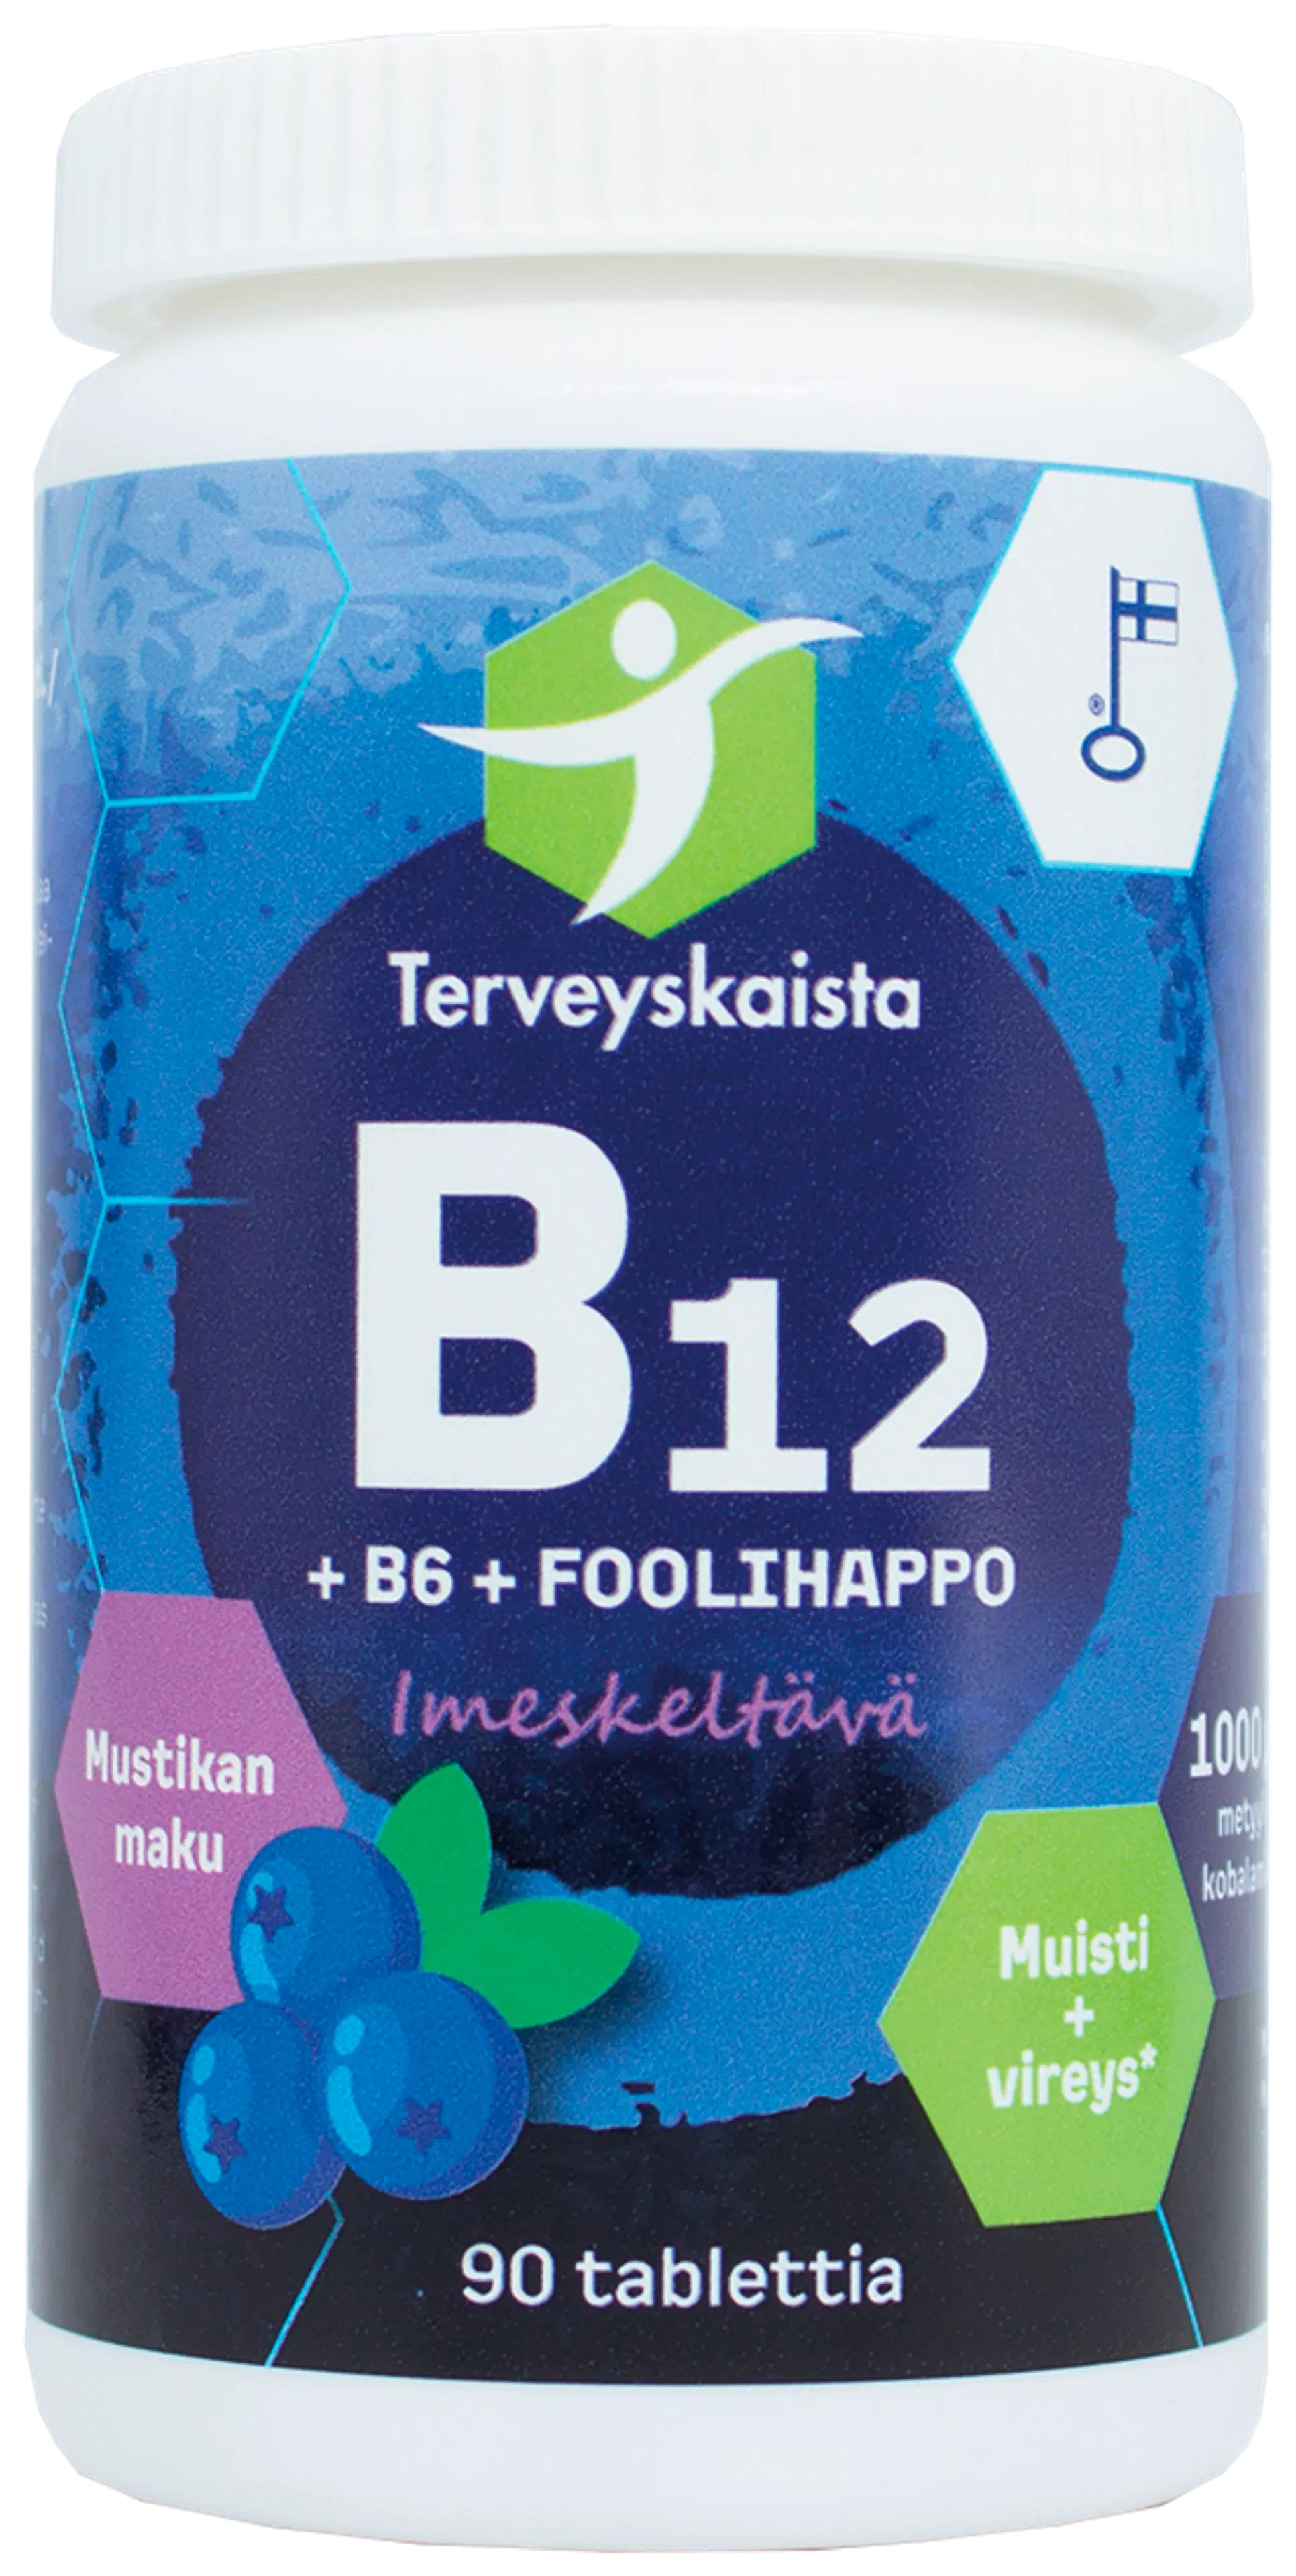 Terveyskaistan B12 + B6 + Foolihappo imeskeltävä mustikanmakuinen ravintolisä 90 tabl